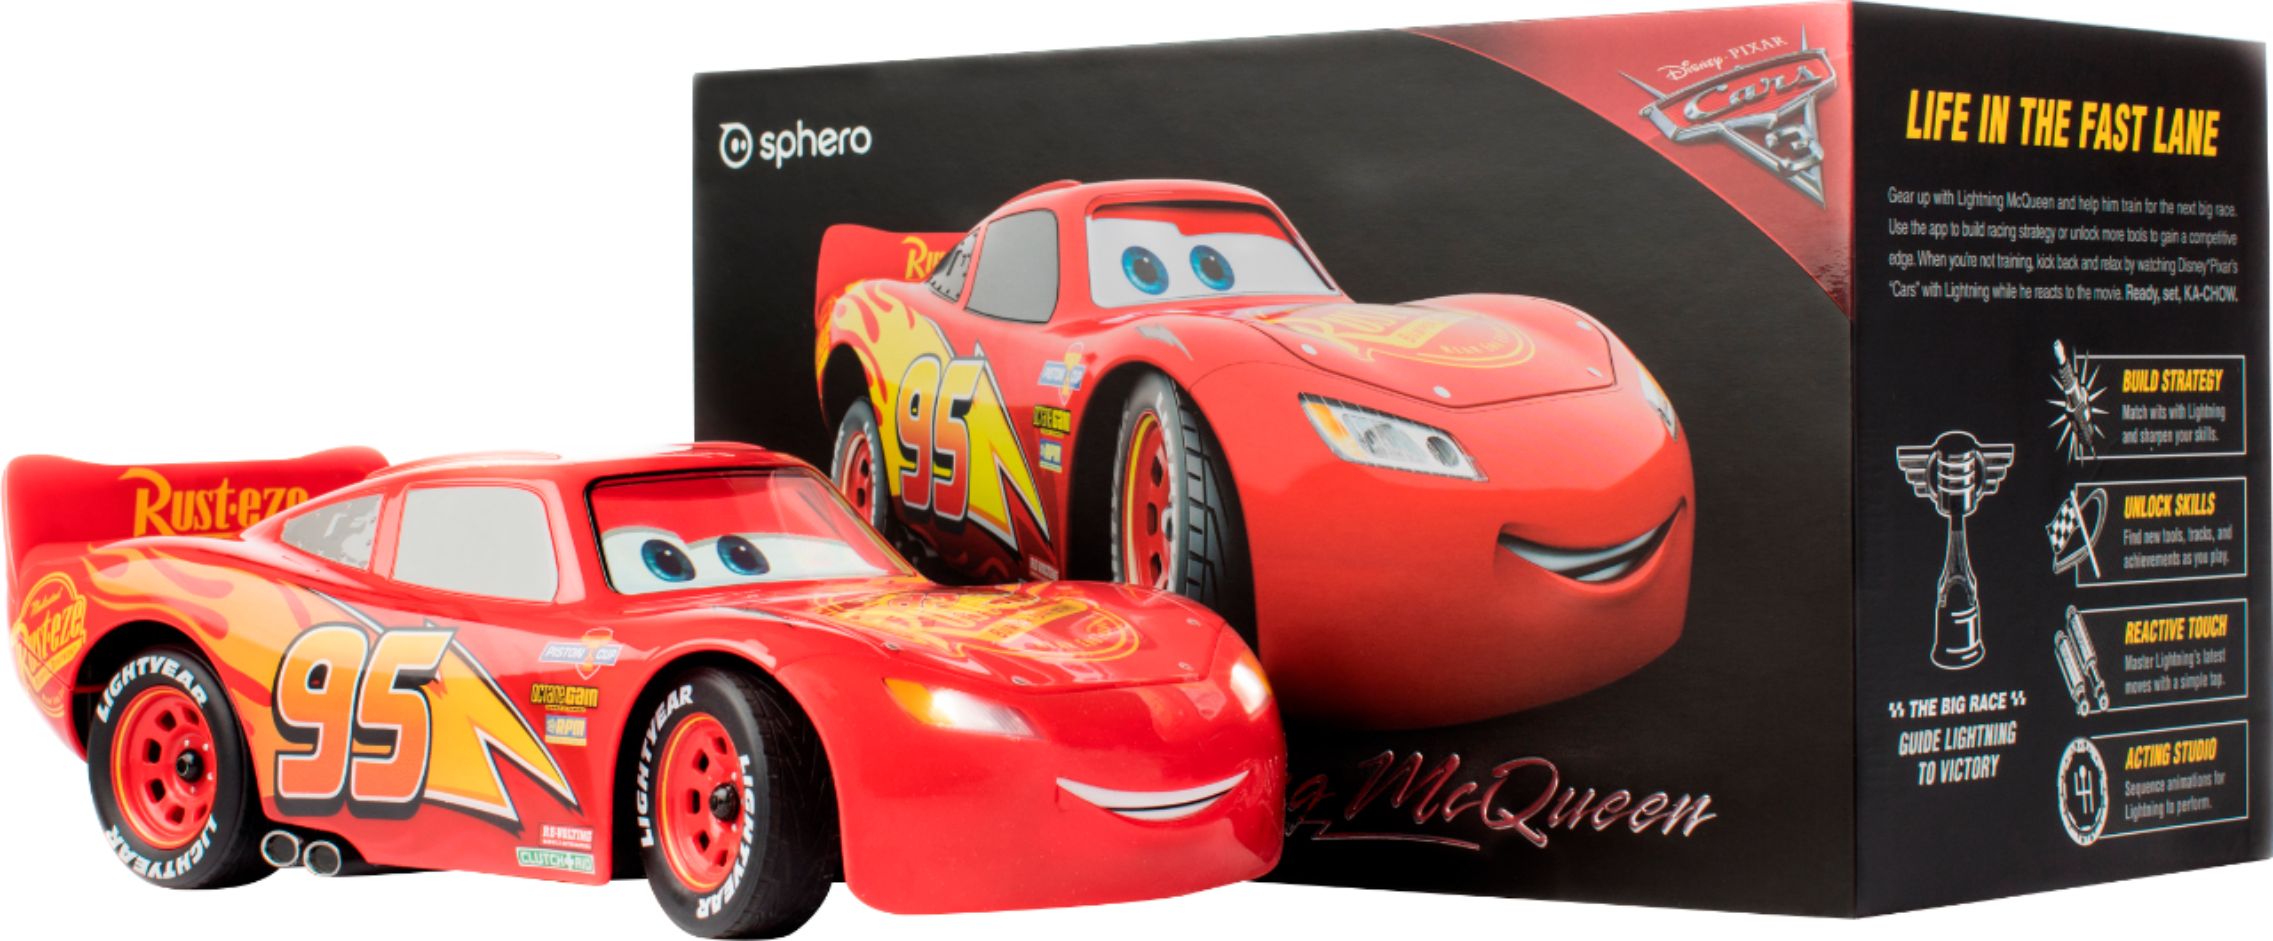 Ultimate Lightning McQueen Disney Cars 3 Sphero IRL McQueen is alive !Toy  Review 